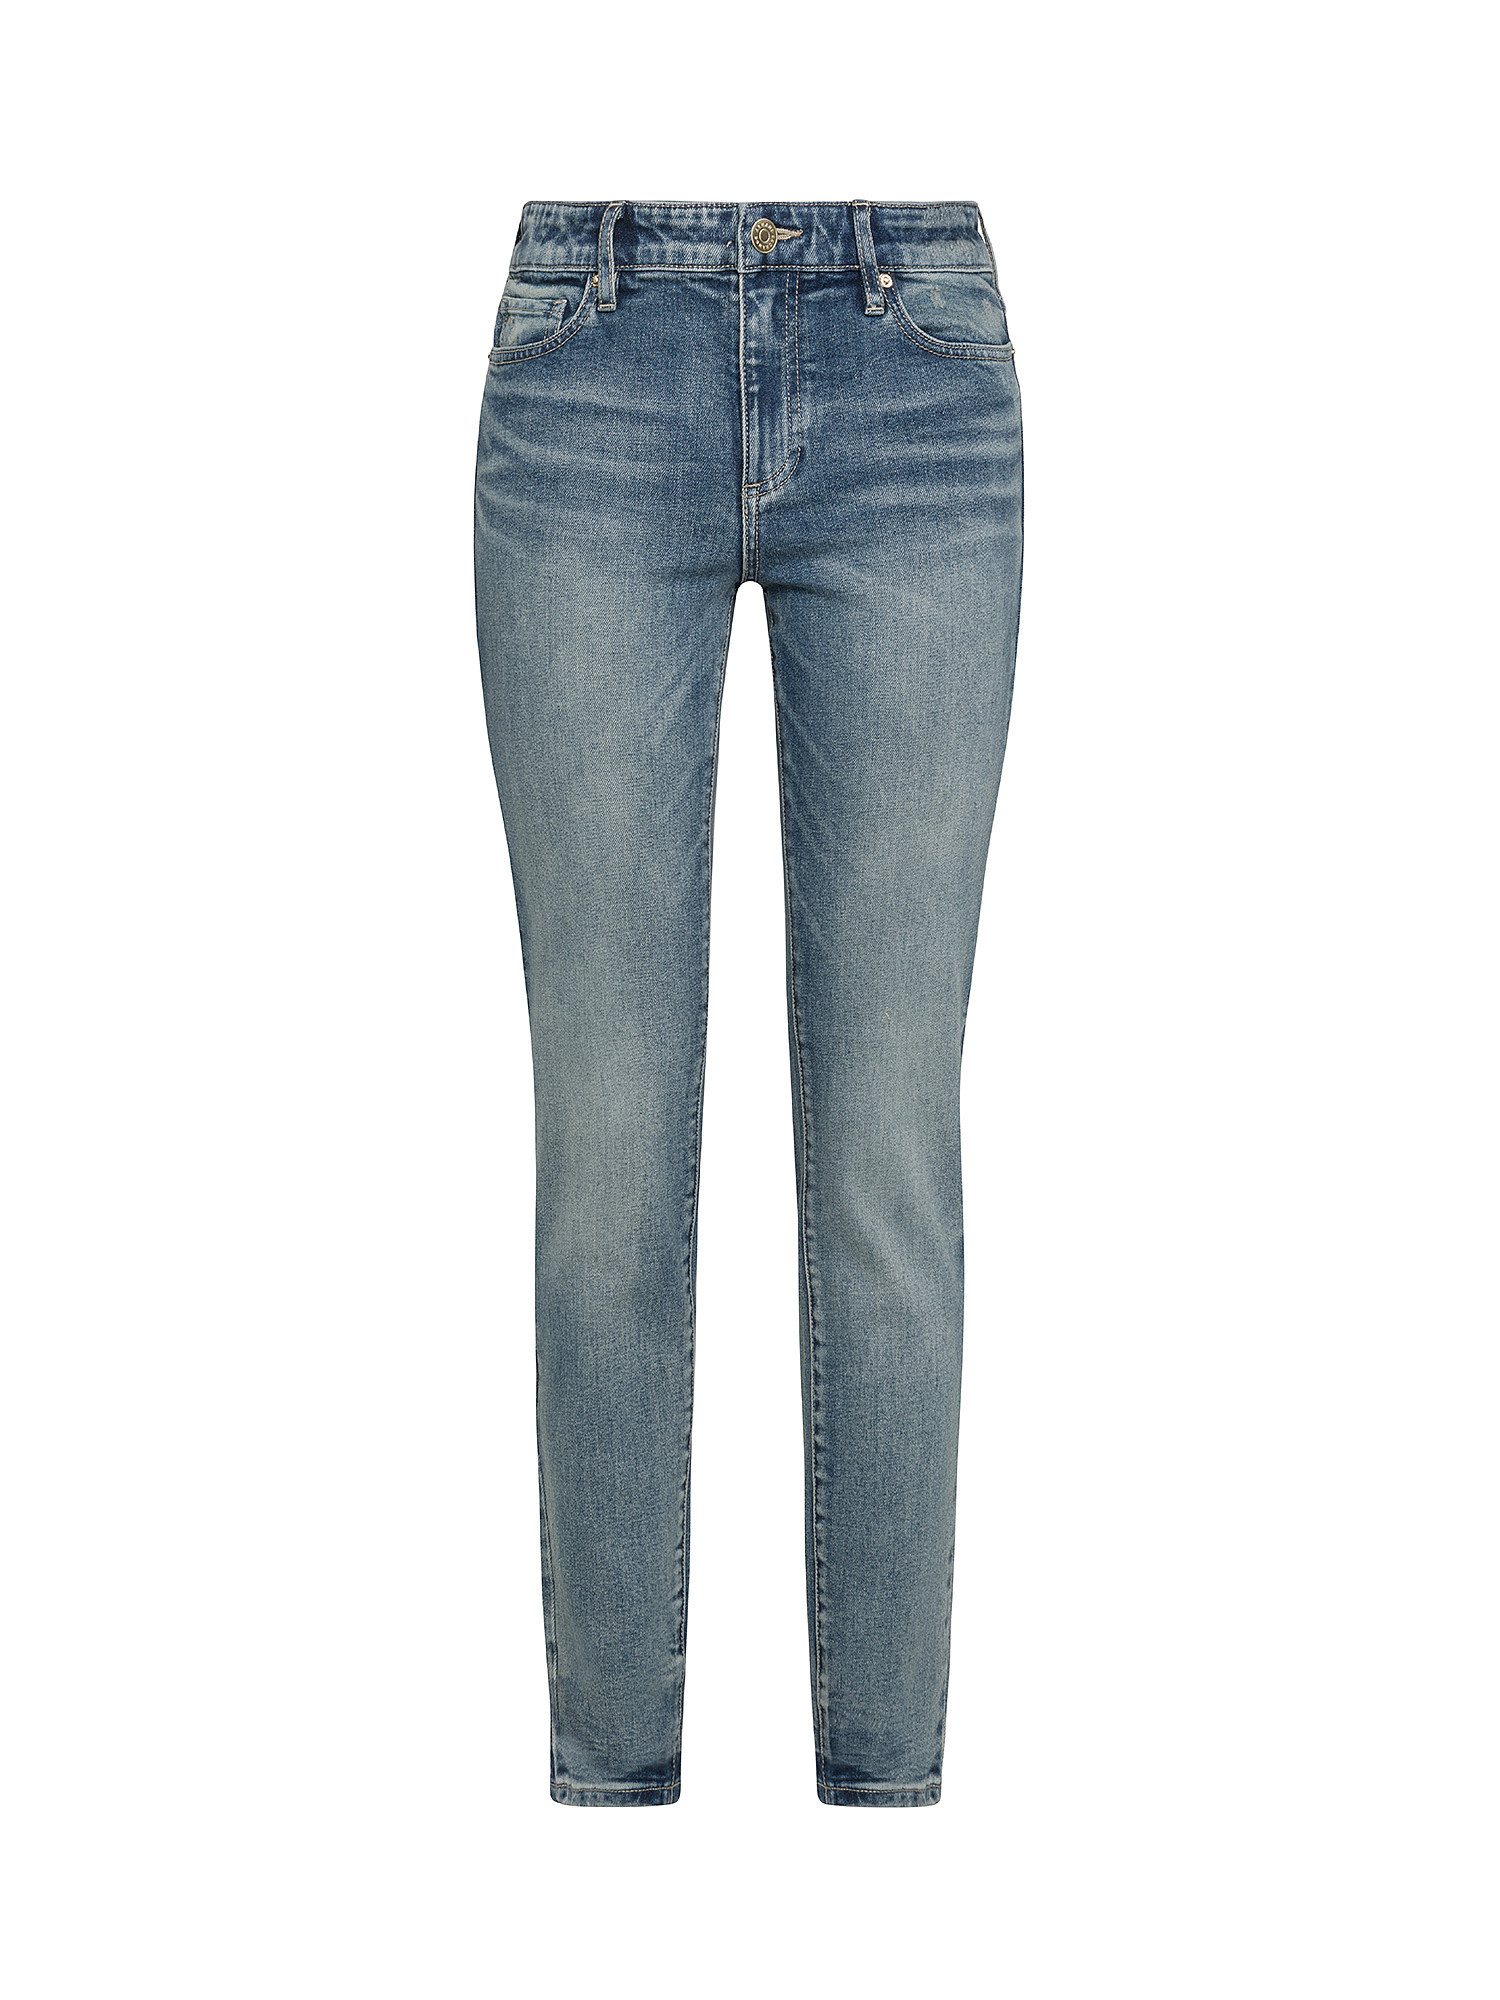 Armani Exchange - Five pocket super skinny jeans, Denim, large image number 0